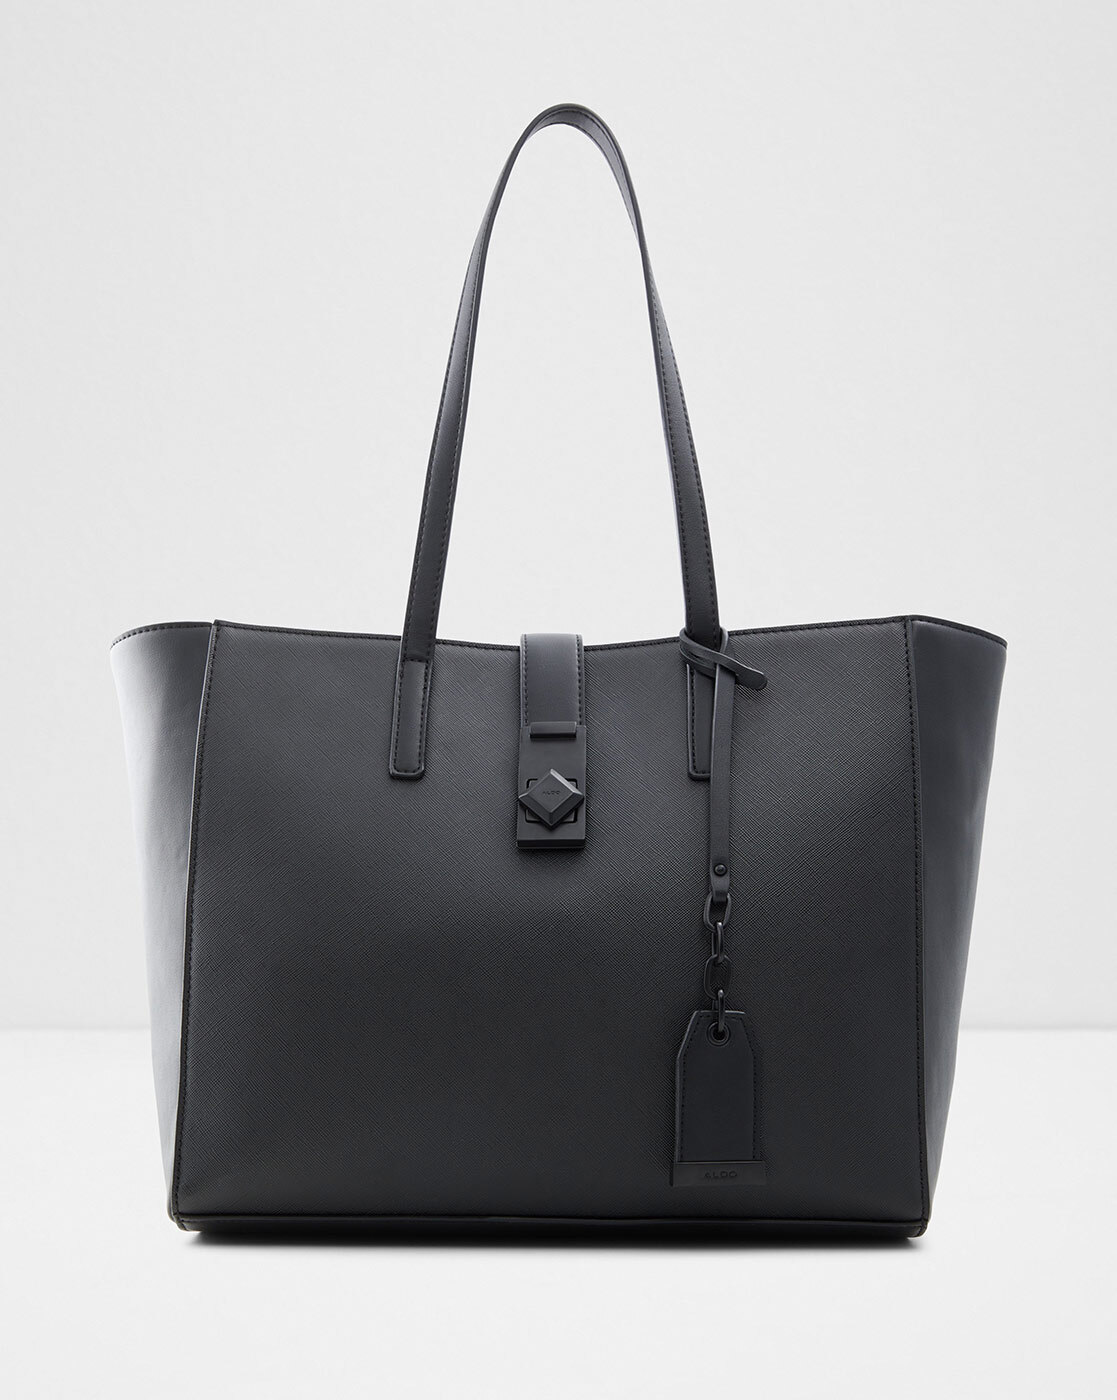 ALDO Miraewin, Black/Black: Handbags: Amazon.com